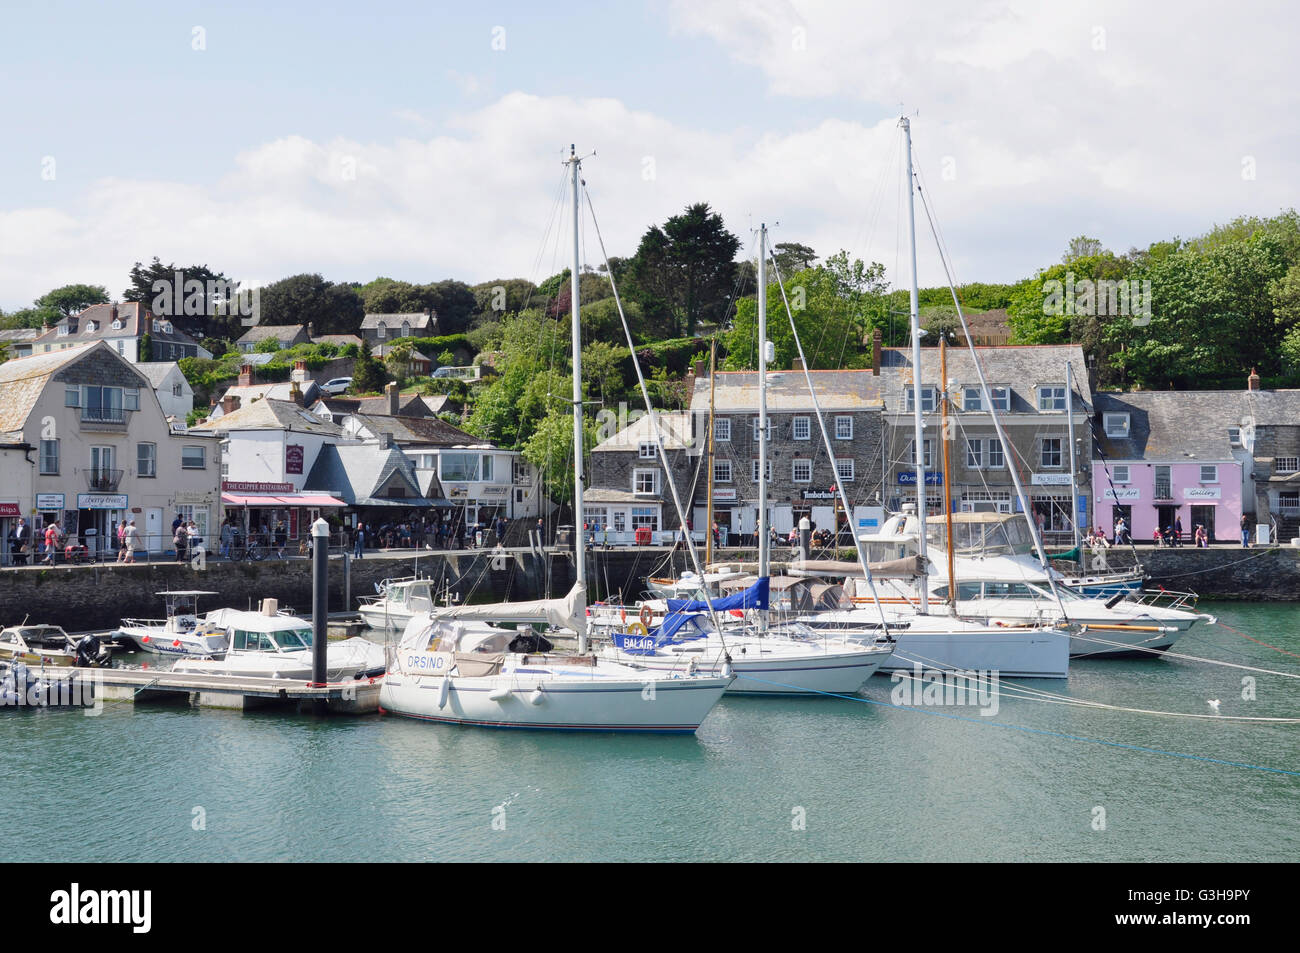 - Cornwall Padstow Harbour - bateaux à l'ancre - Bateaux de plaisance - toile de bâtiments d'époque, le quai de la ligne - soleil  + ciel bleu Banque D'Images